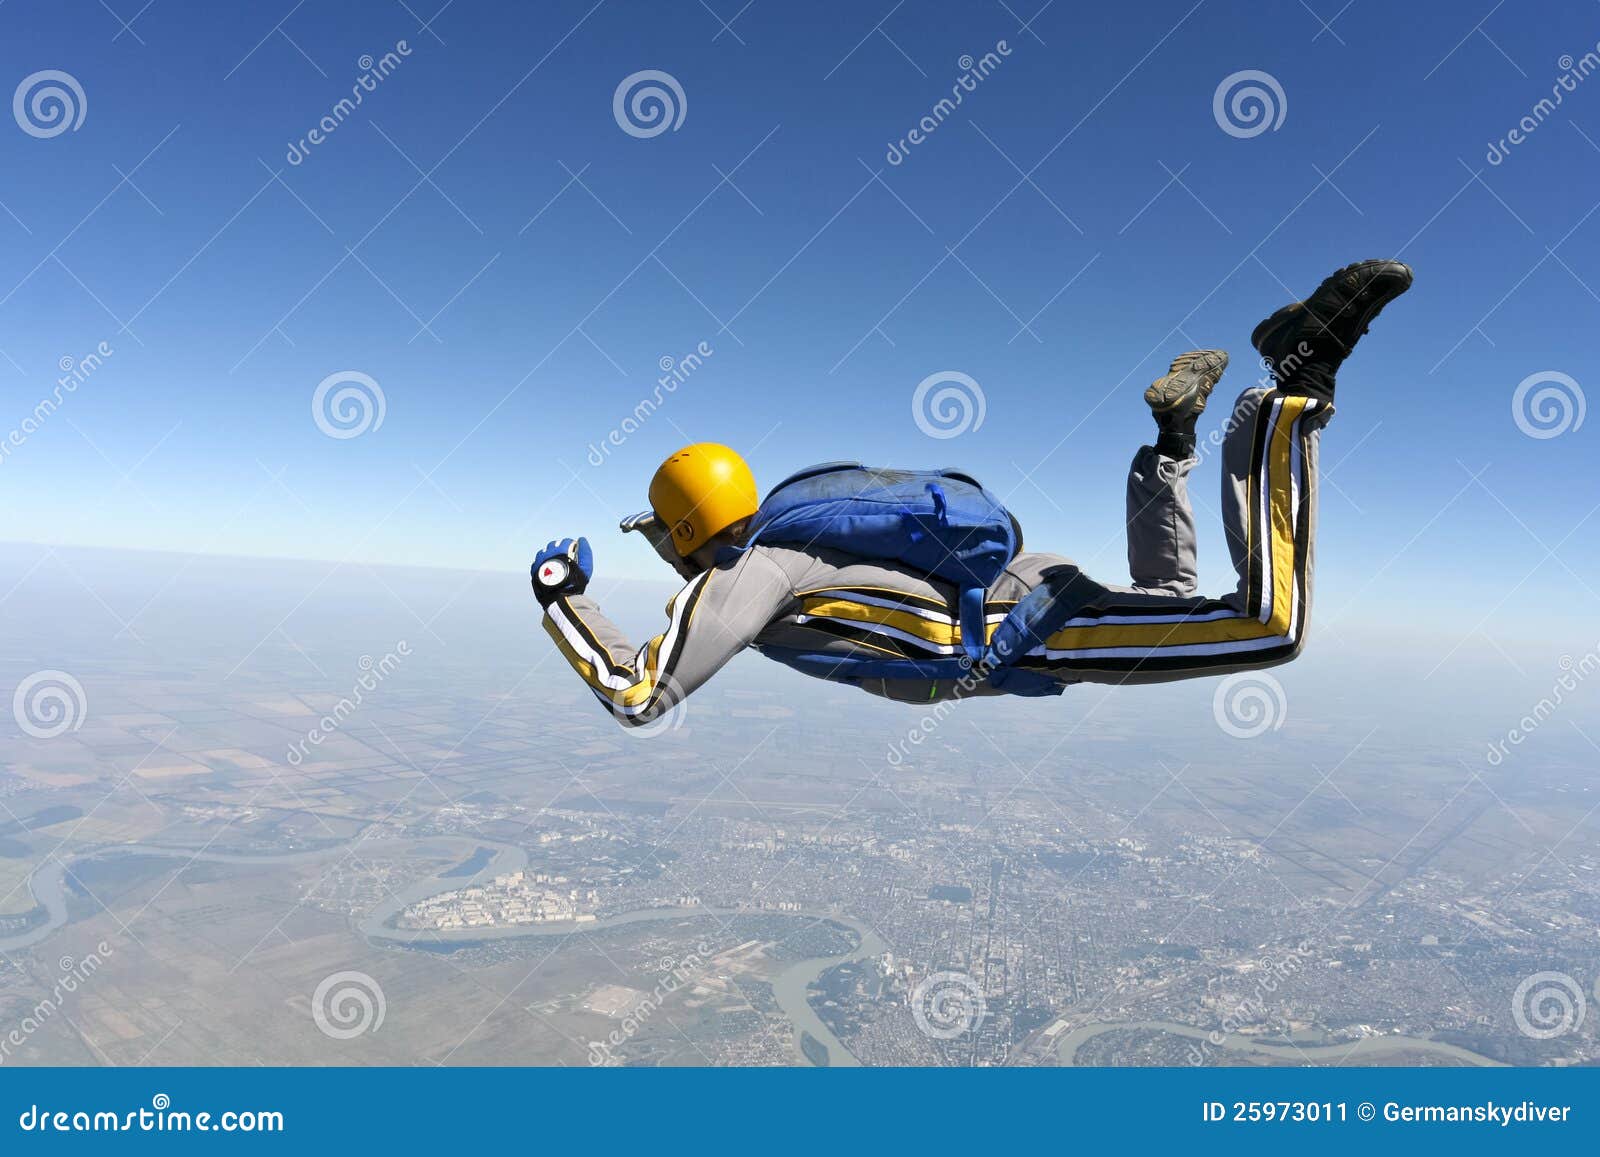 Φωτογραφία ελεύθερων πτώσεων με αλεξίπτωτο. Ο σπουδαστής εκτελεί τη στοιχειώδη εργασία skydiver freefall.